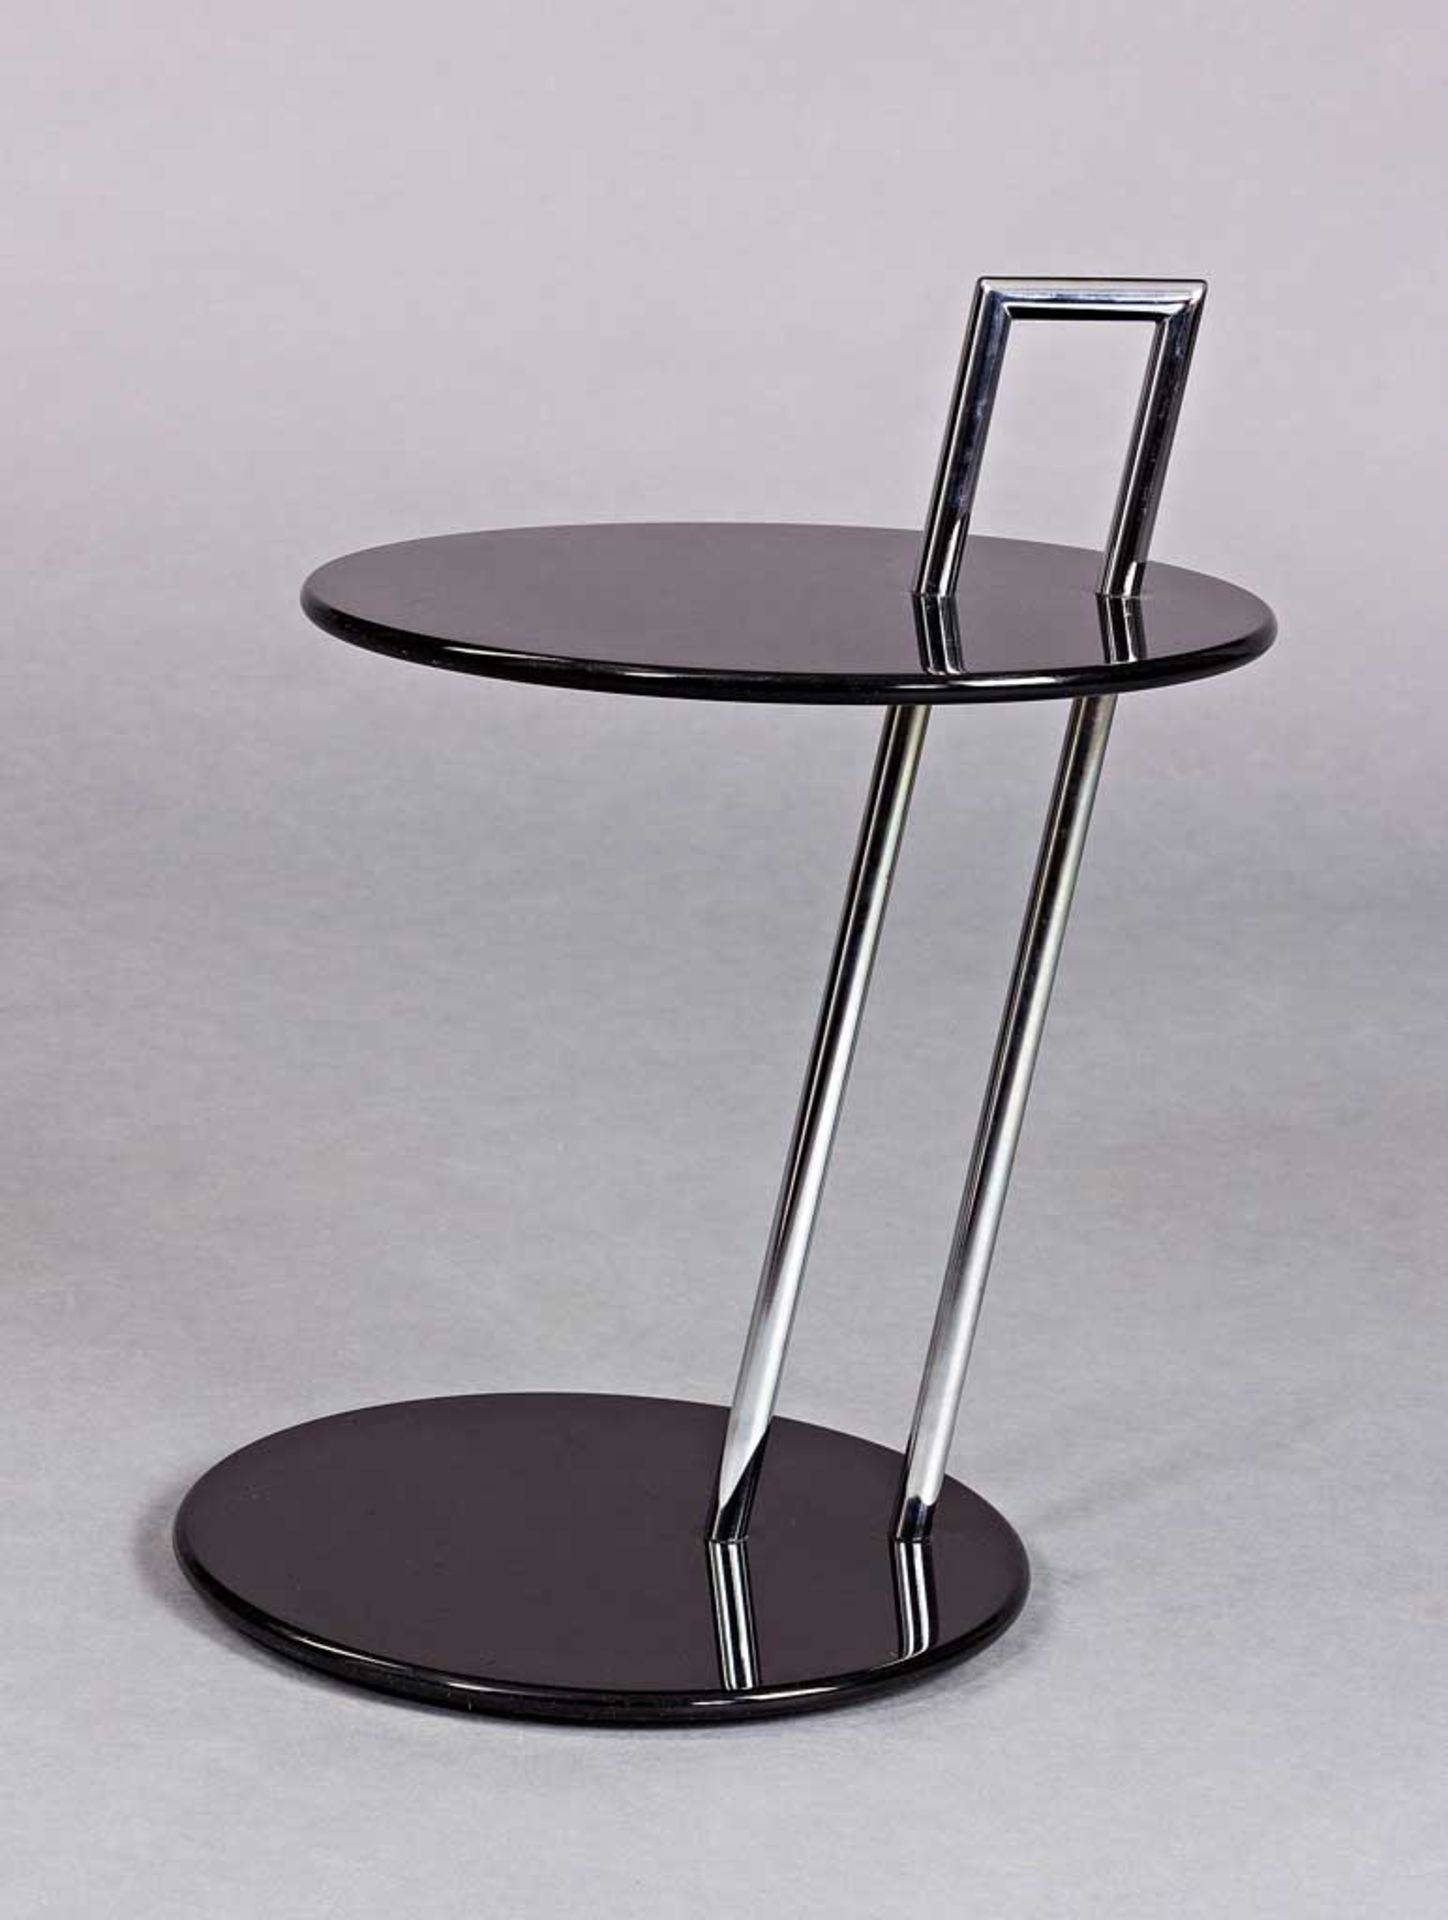 Occasional Table. Schwarzlack und Stahlrohr. Entwurf Eileen Gray 1927. Etikett "Vereinigte